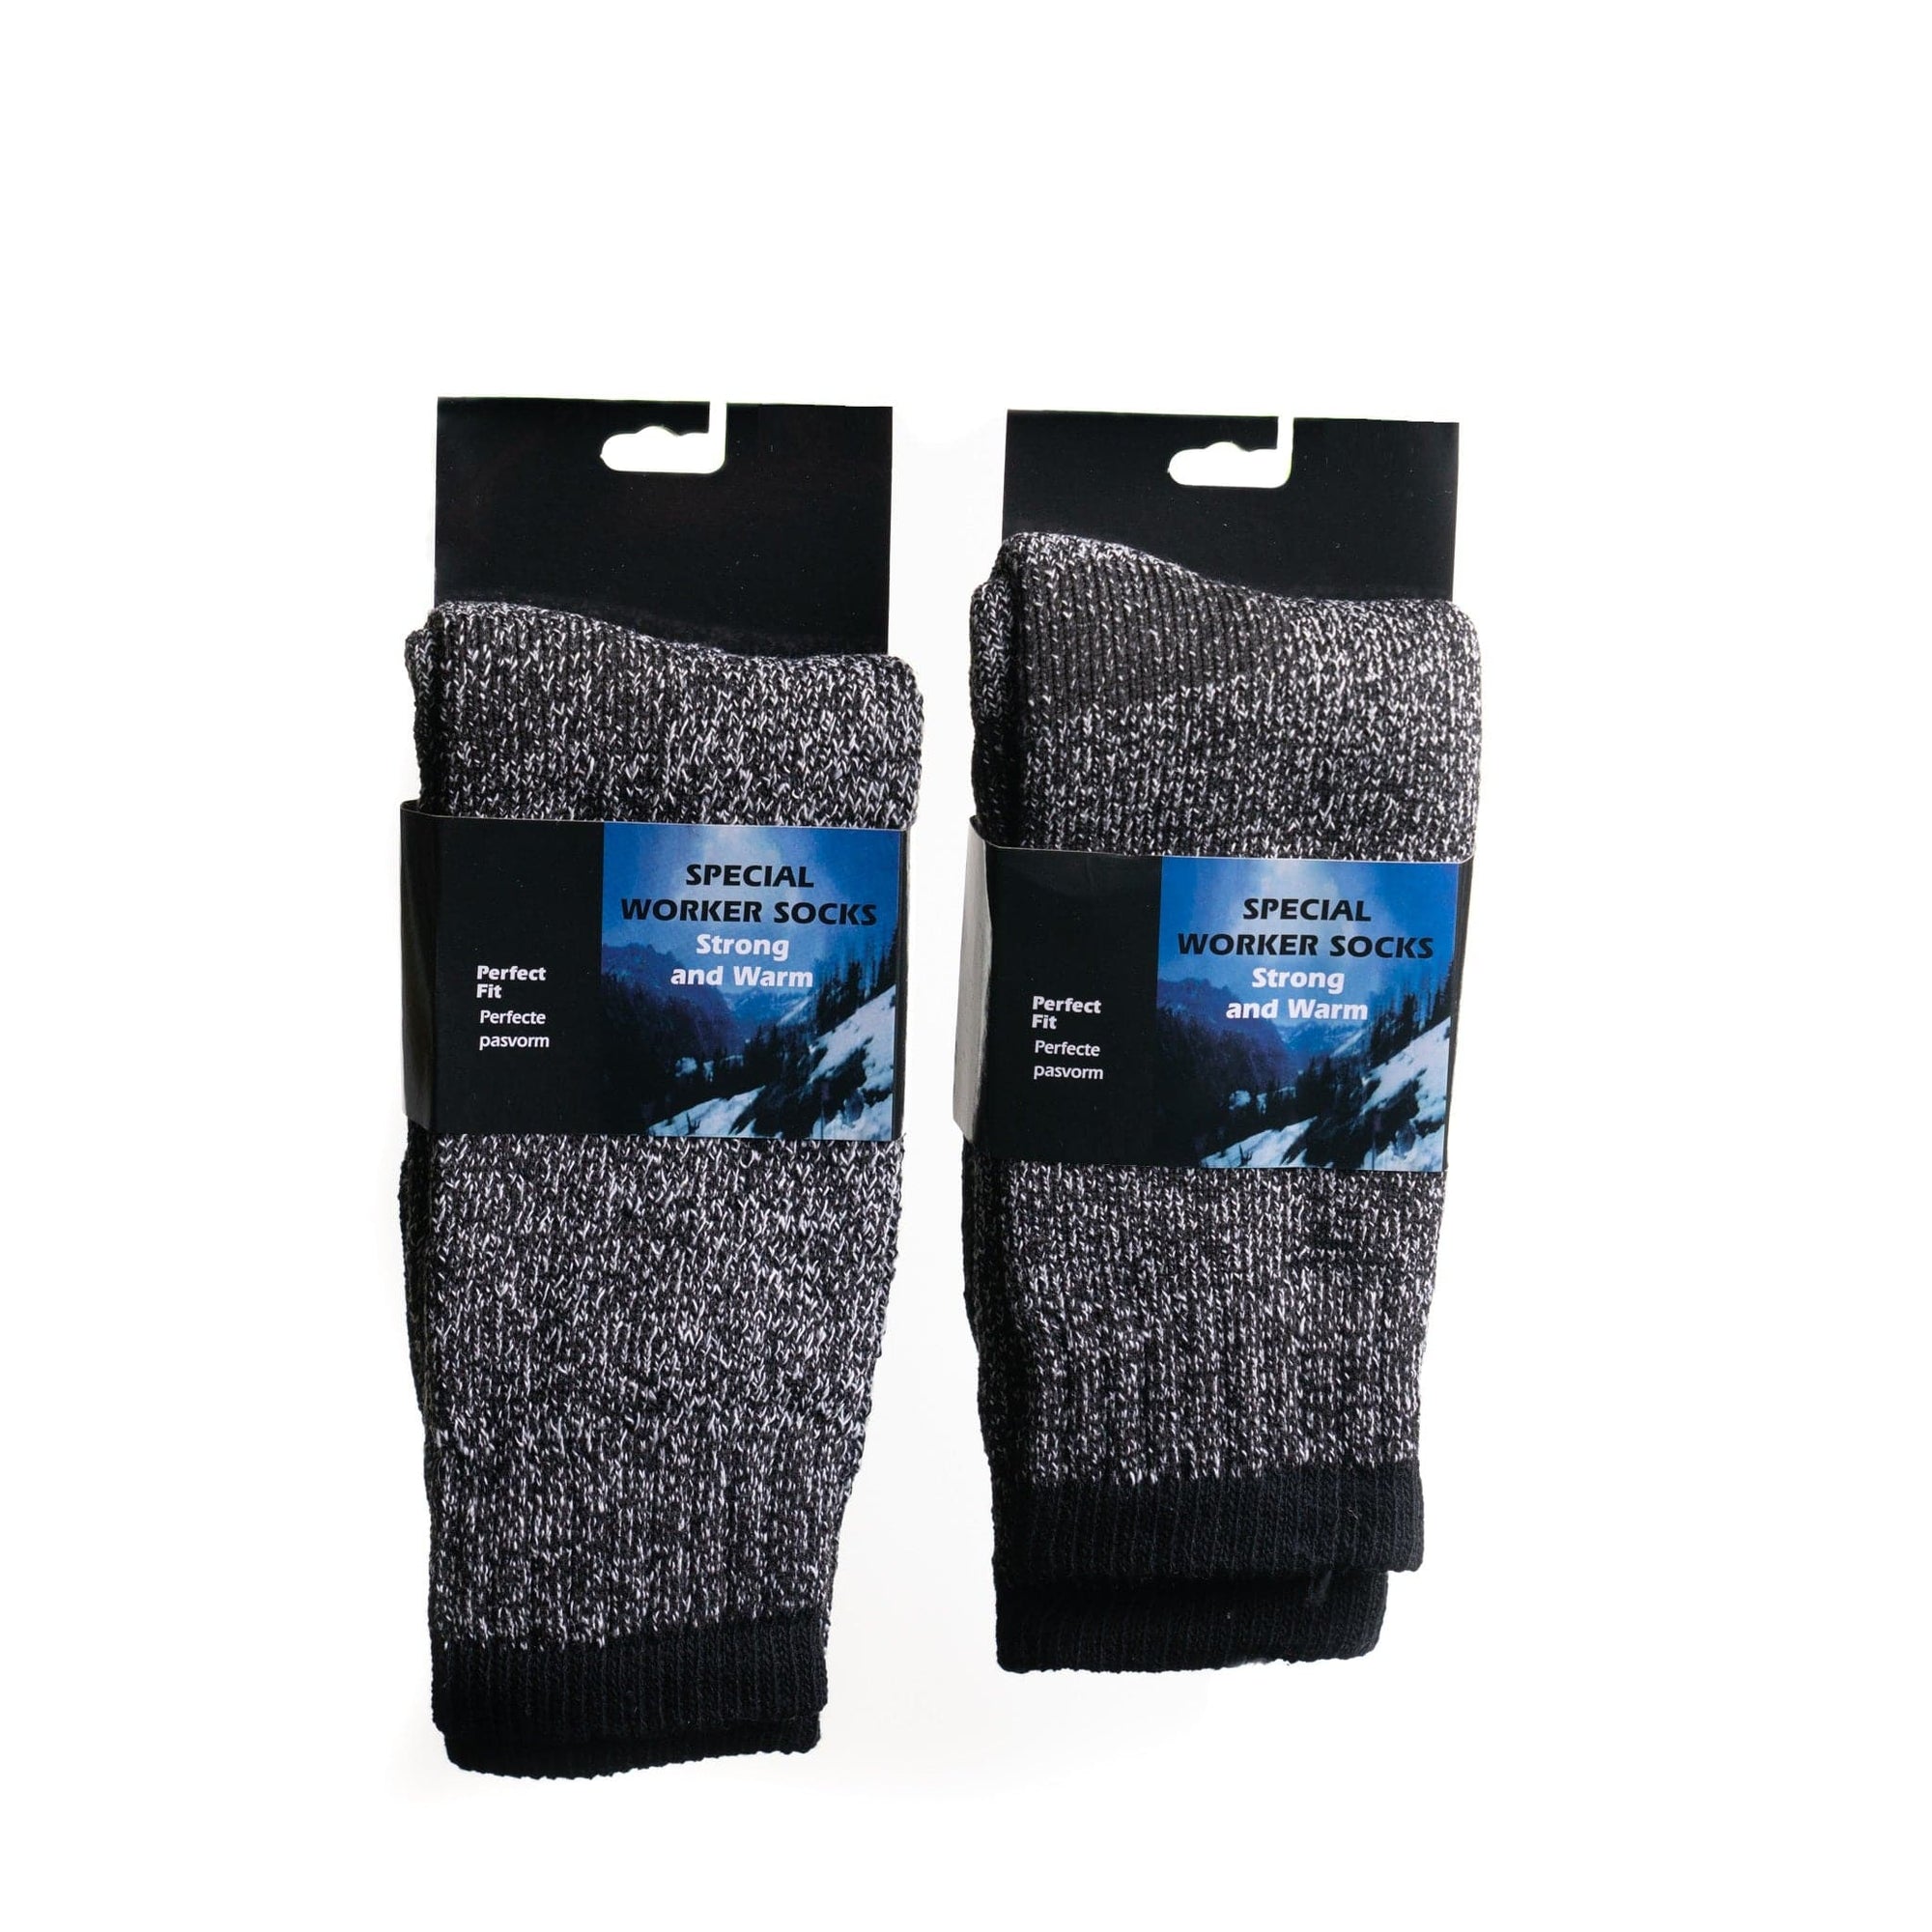 Wool Blend Work Socks - 2 Pack